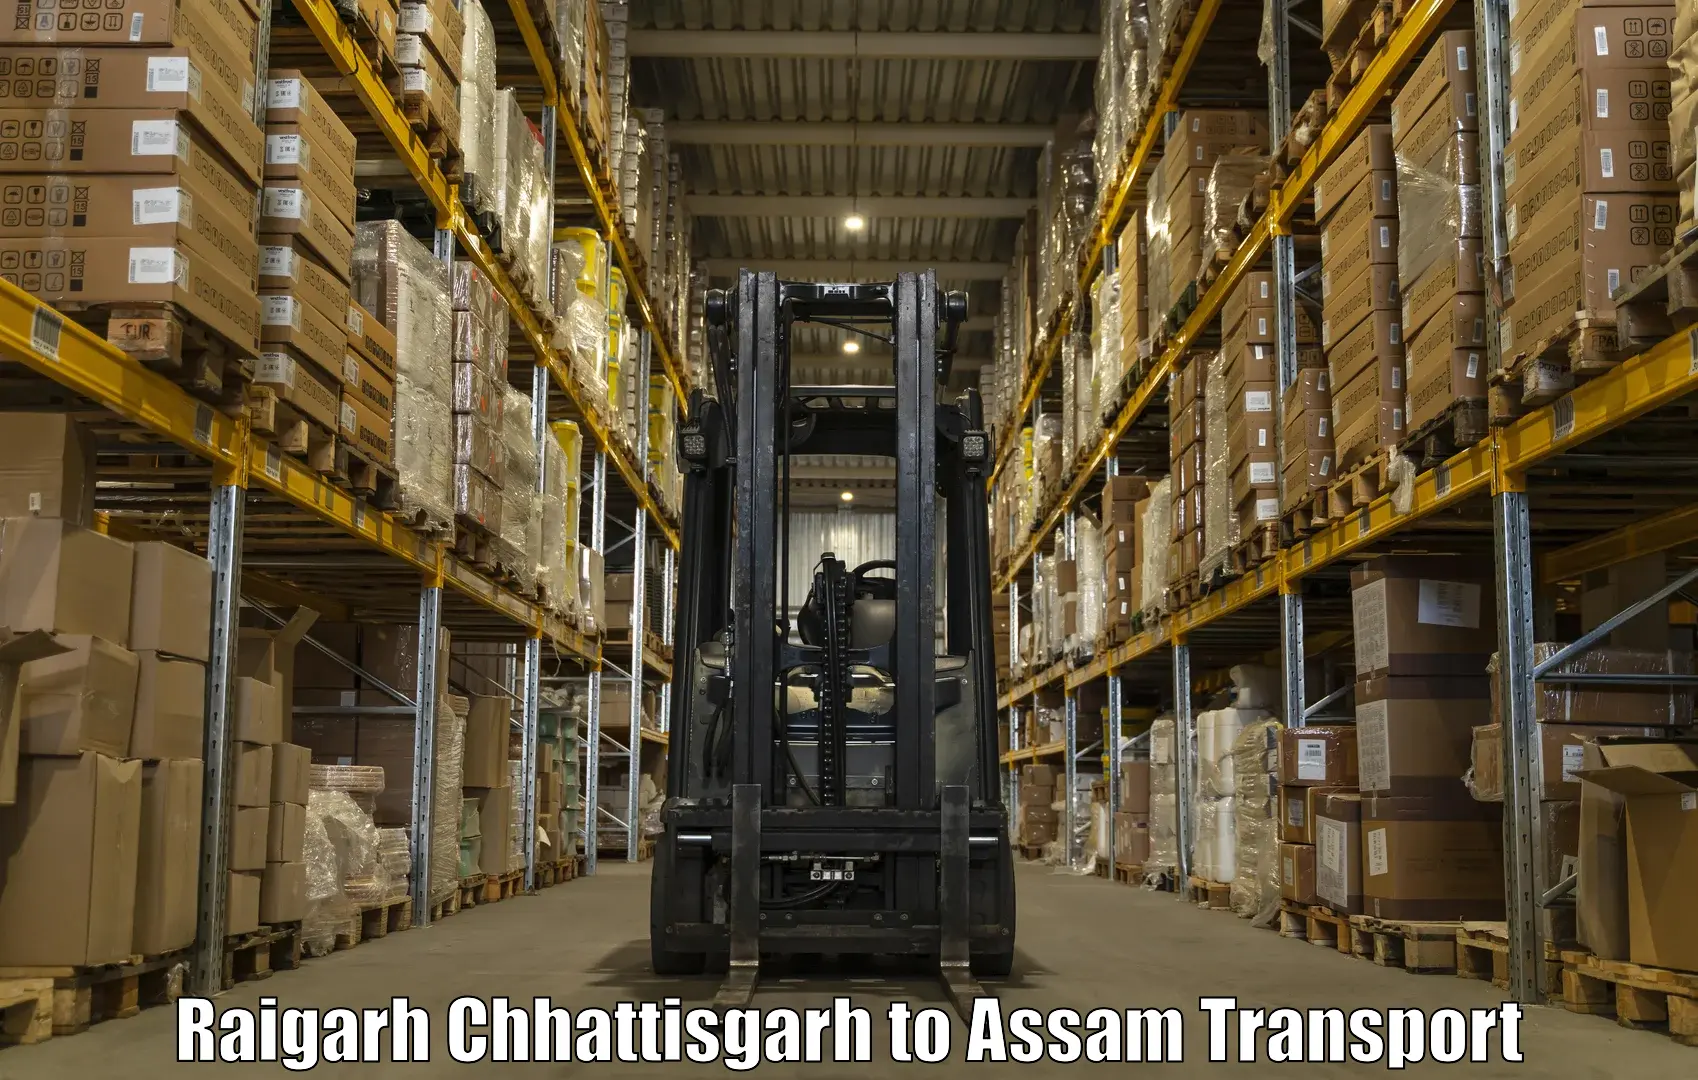 Door to door transport services Raigarh Chhattisgarh to Hajo